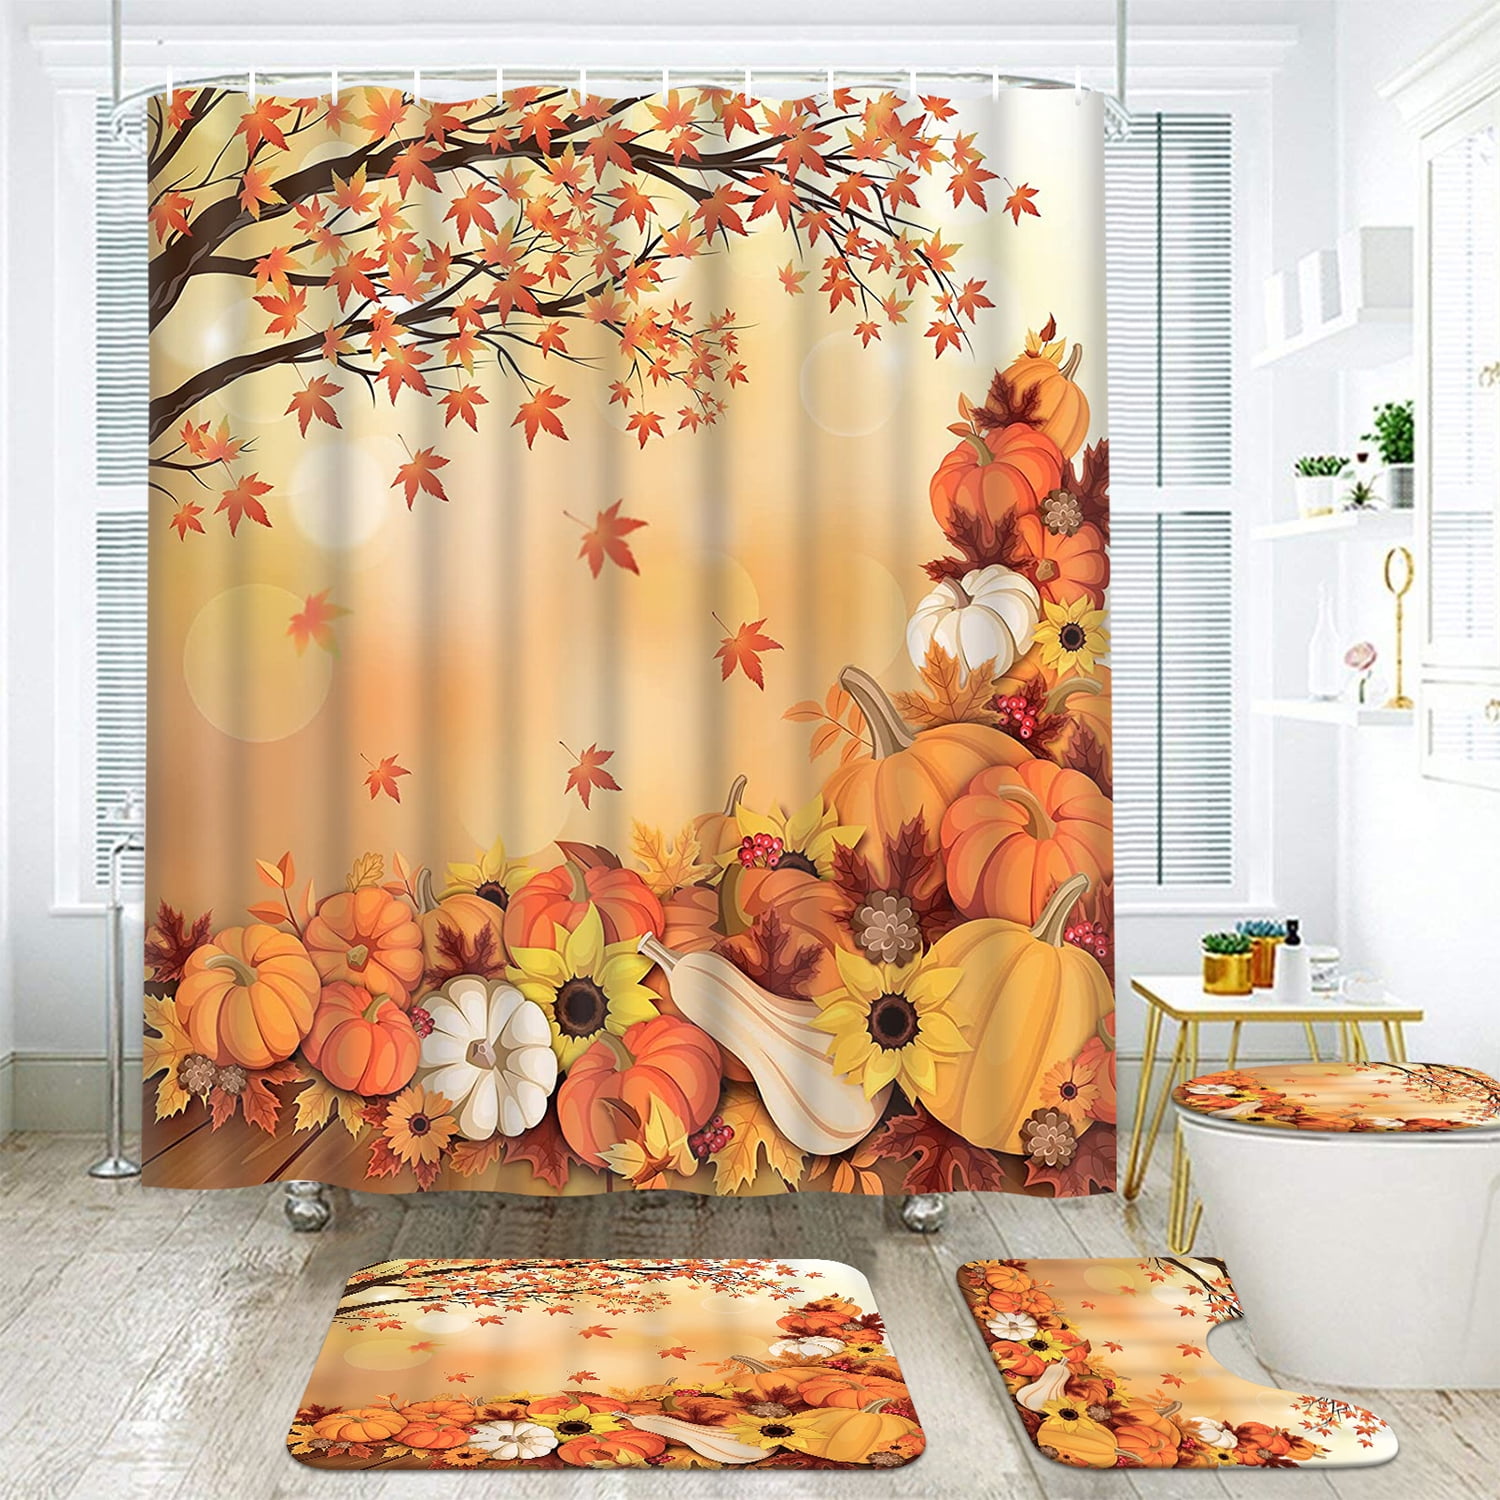 LAIZIHOME Aesthetic Design Shower Curtains Orange Leaf Bathroom Accessories  Premium Material Weighte…See more LAIZIHOME Aesthetic Design Shower